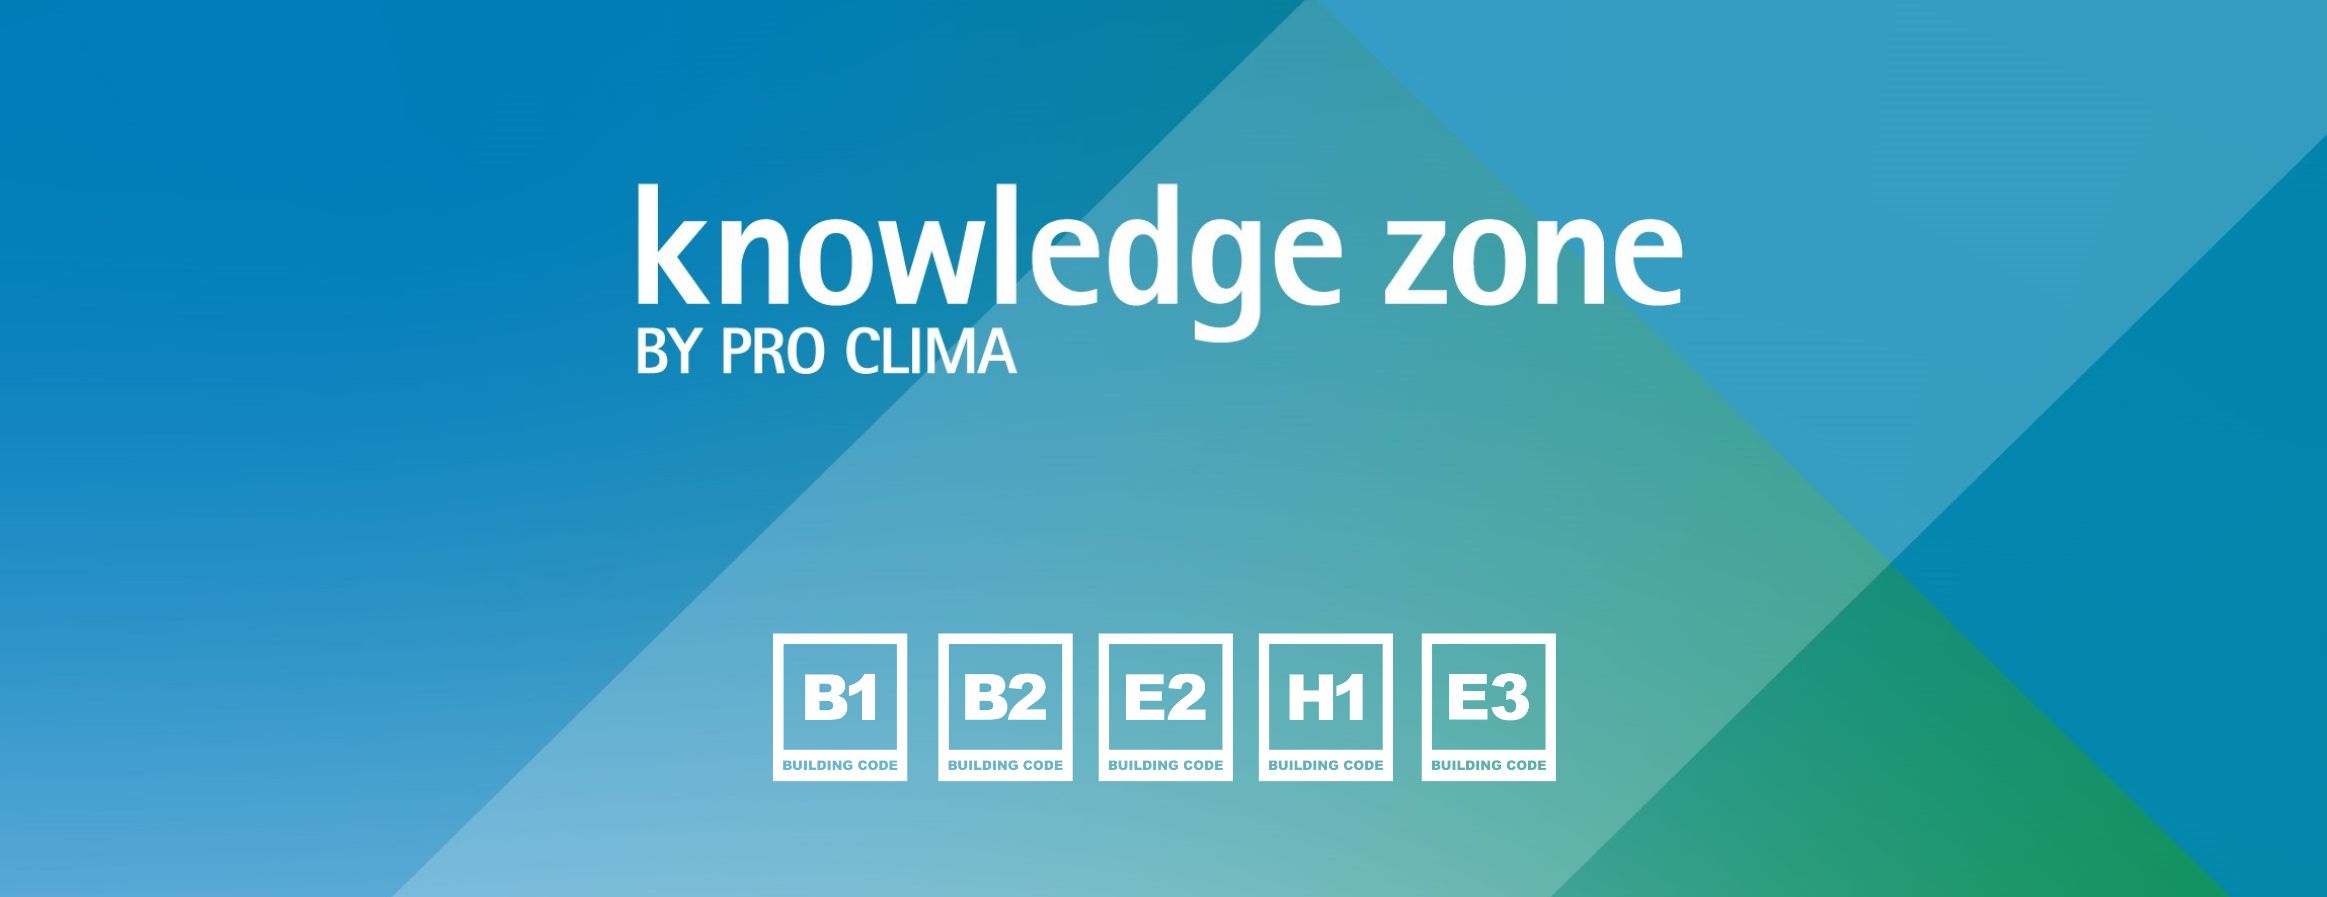 pro clima Knowledge Zone